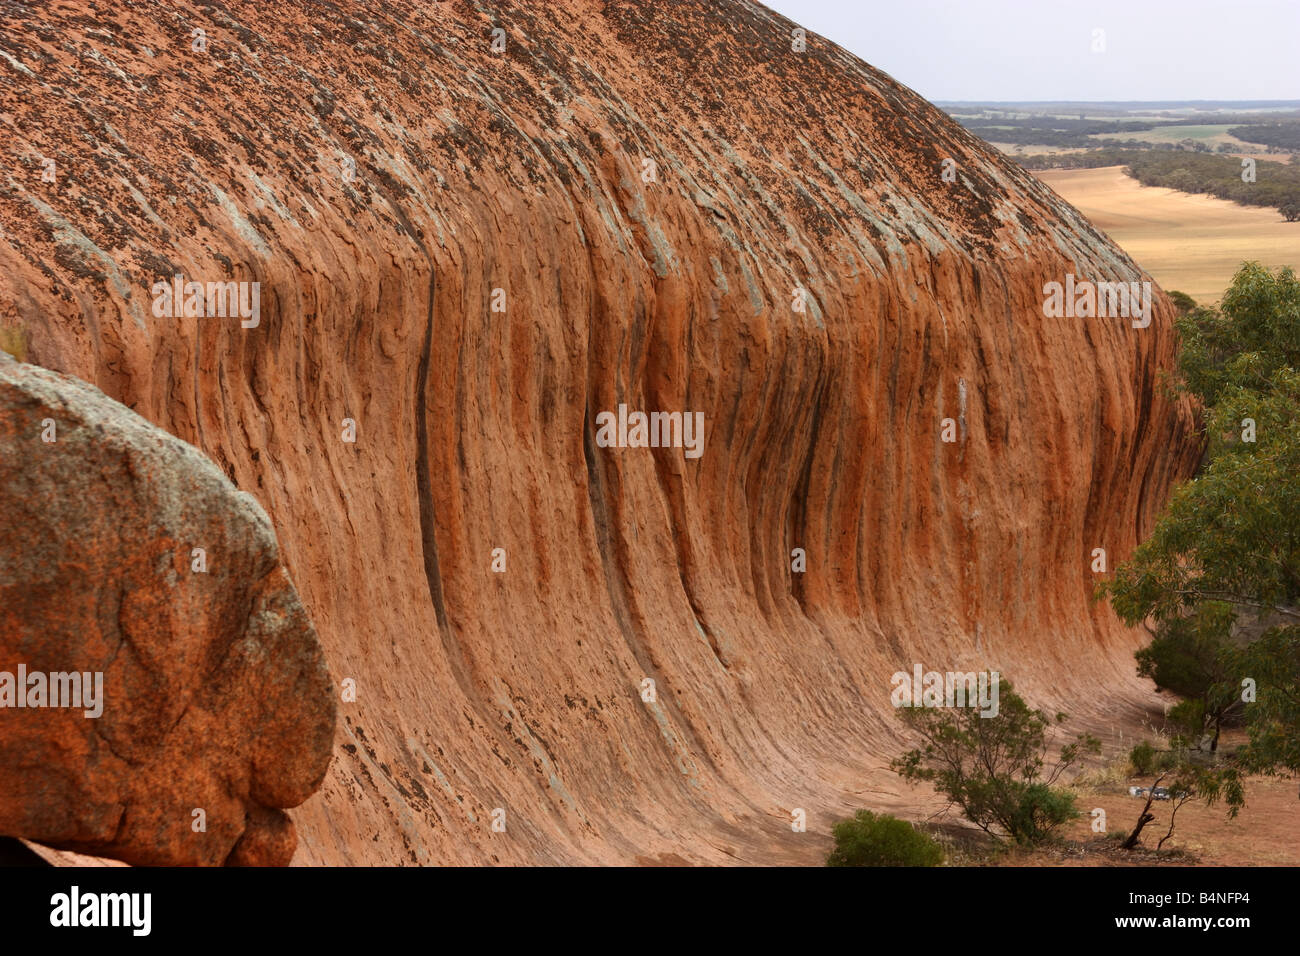 pildappa rock at minnipa on the eyre peninsula Stock Photo